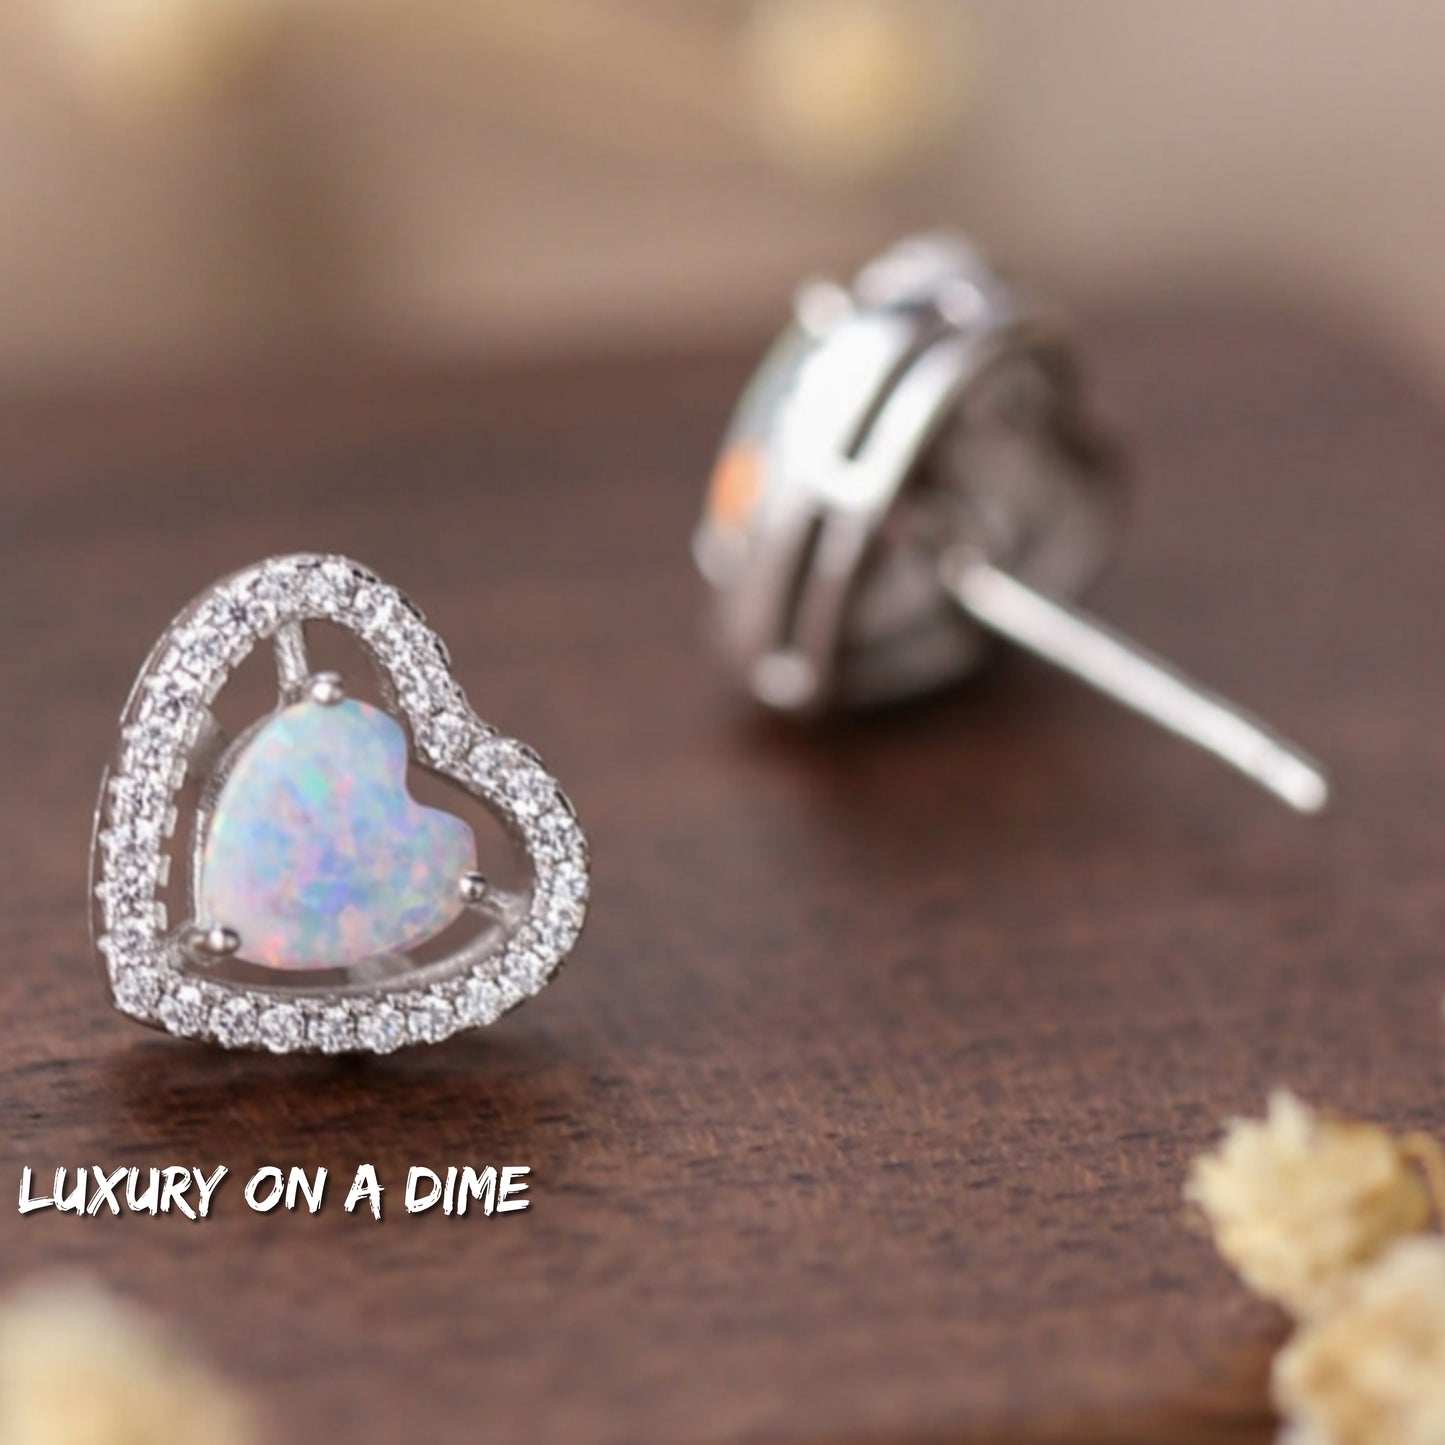 Australian Opal Heart Earrings 925 Sterling Silver Stud Gemstone Jewelry